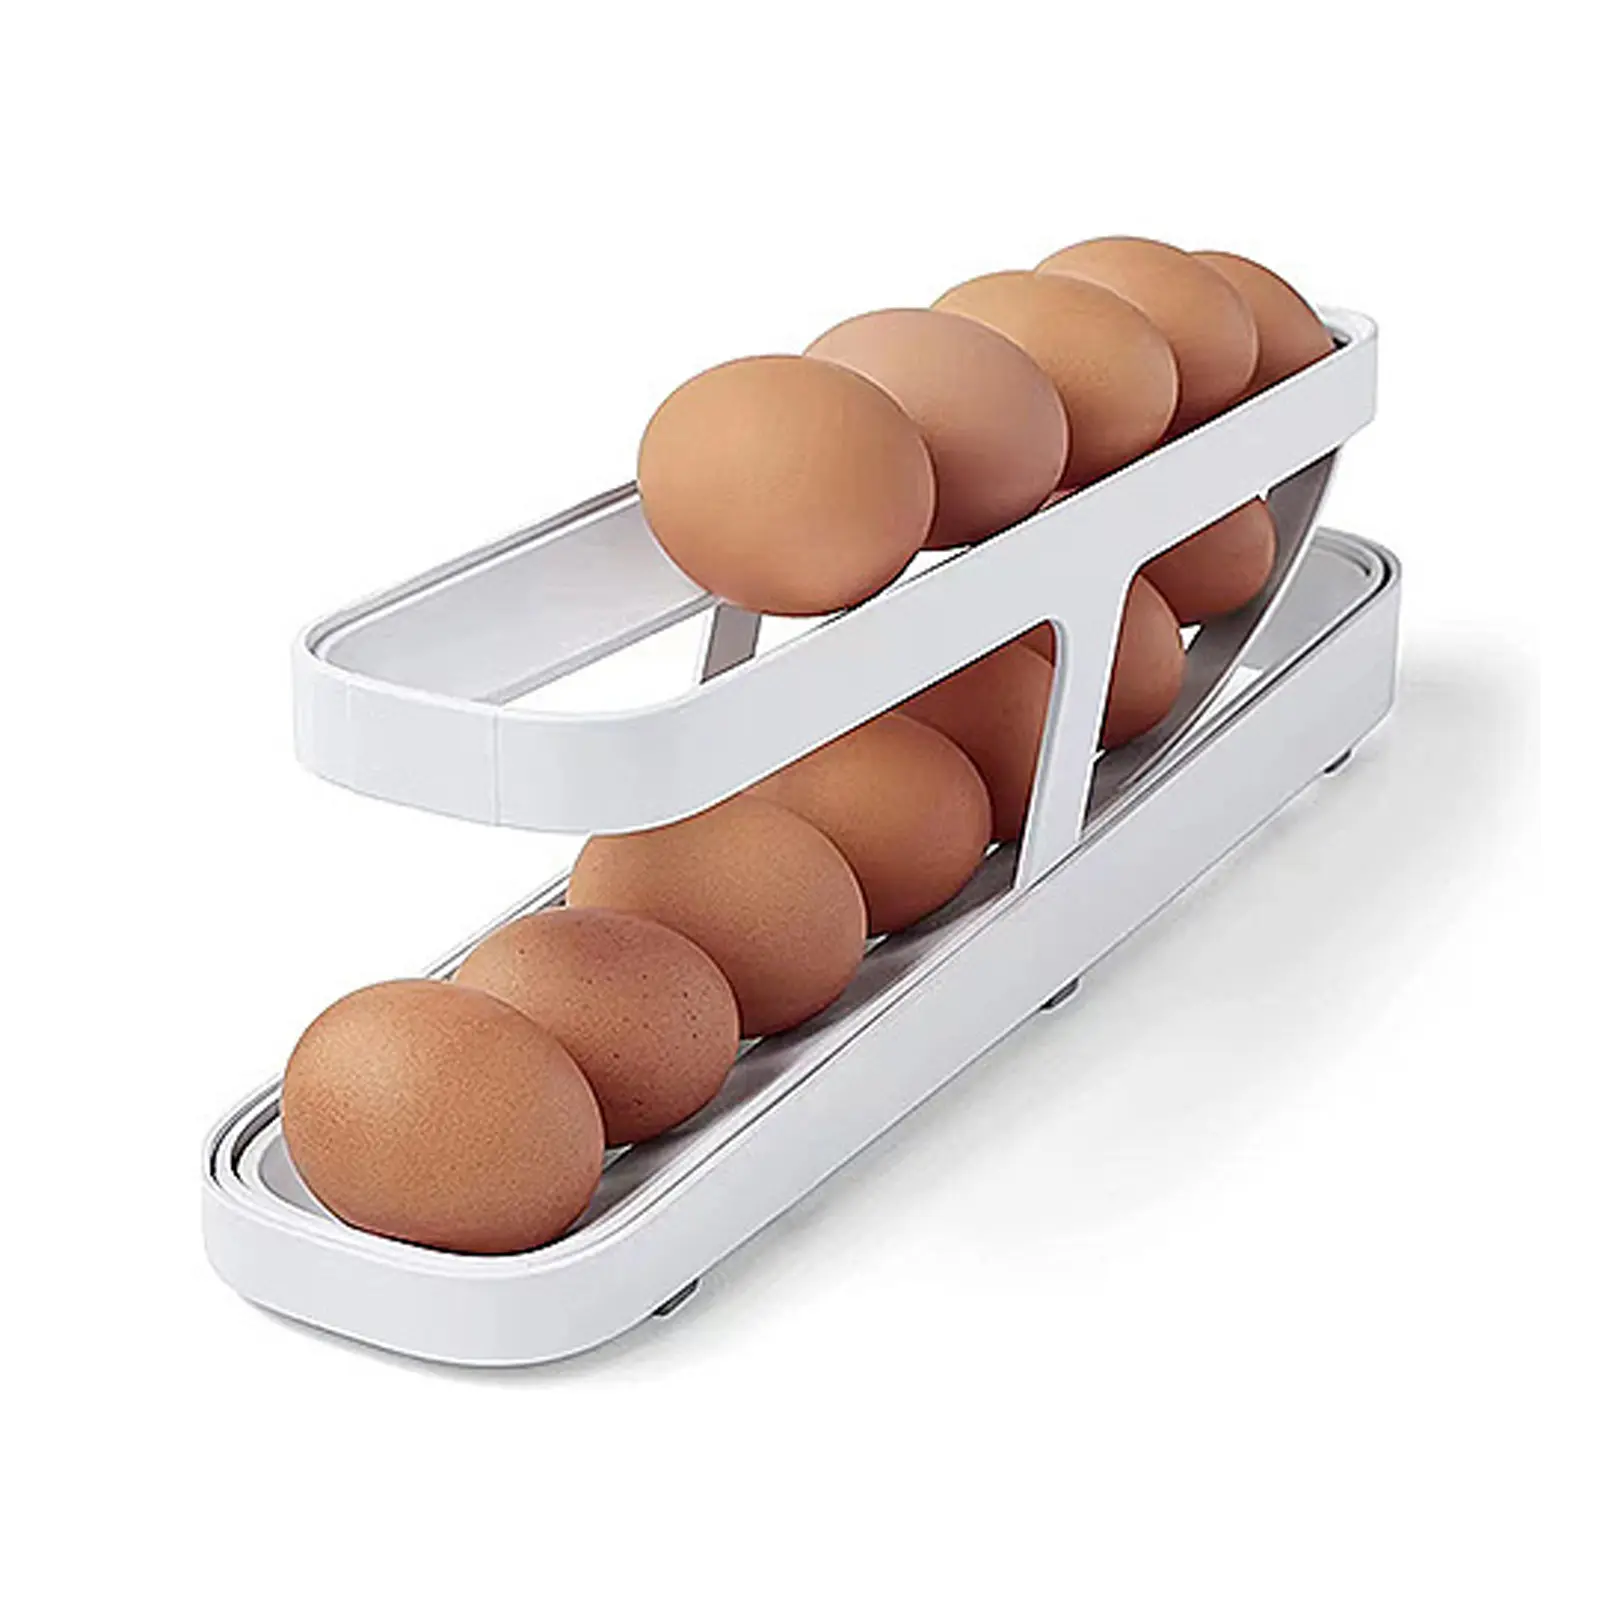 Eierhalter Automatischer Rolling Egg Vorrats behälter 2 Tier Dispenser Roldown Kühlschrank Eier spender für die Küche